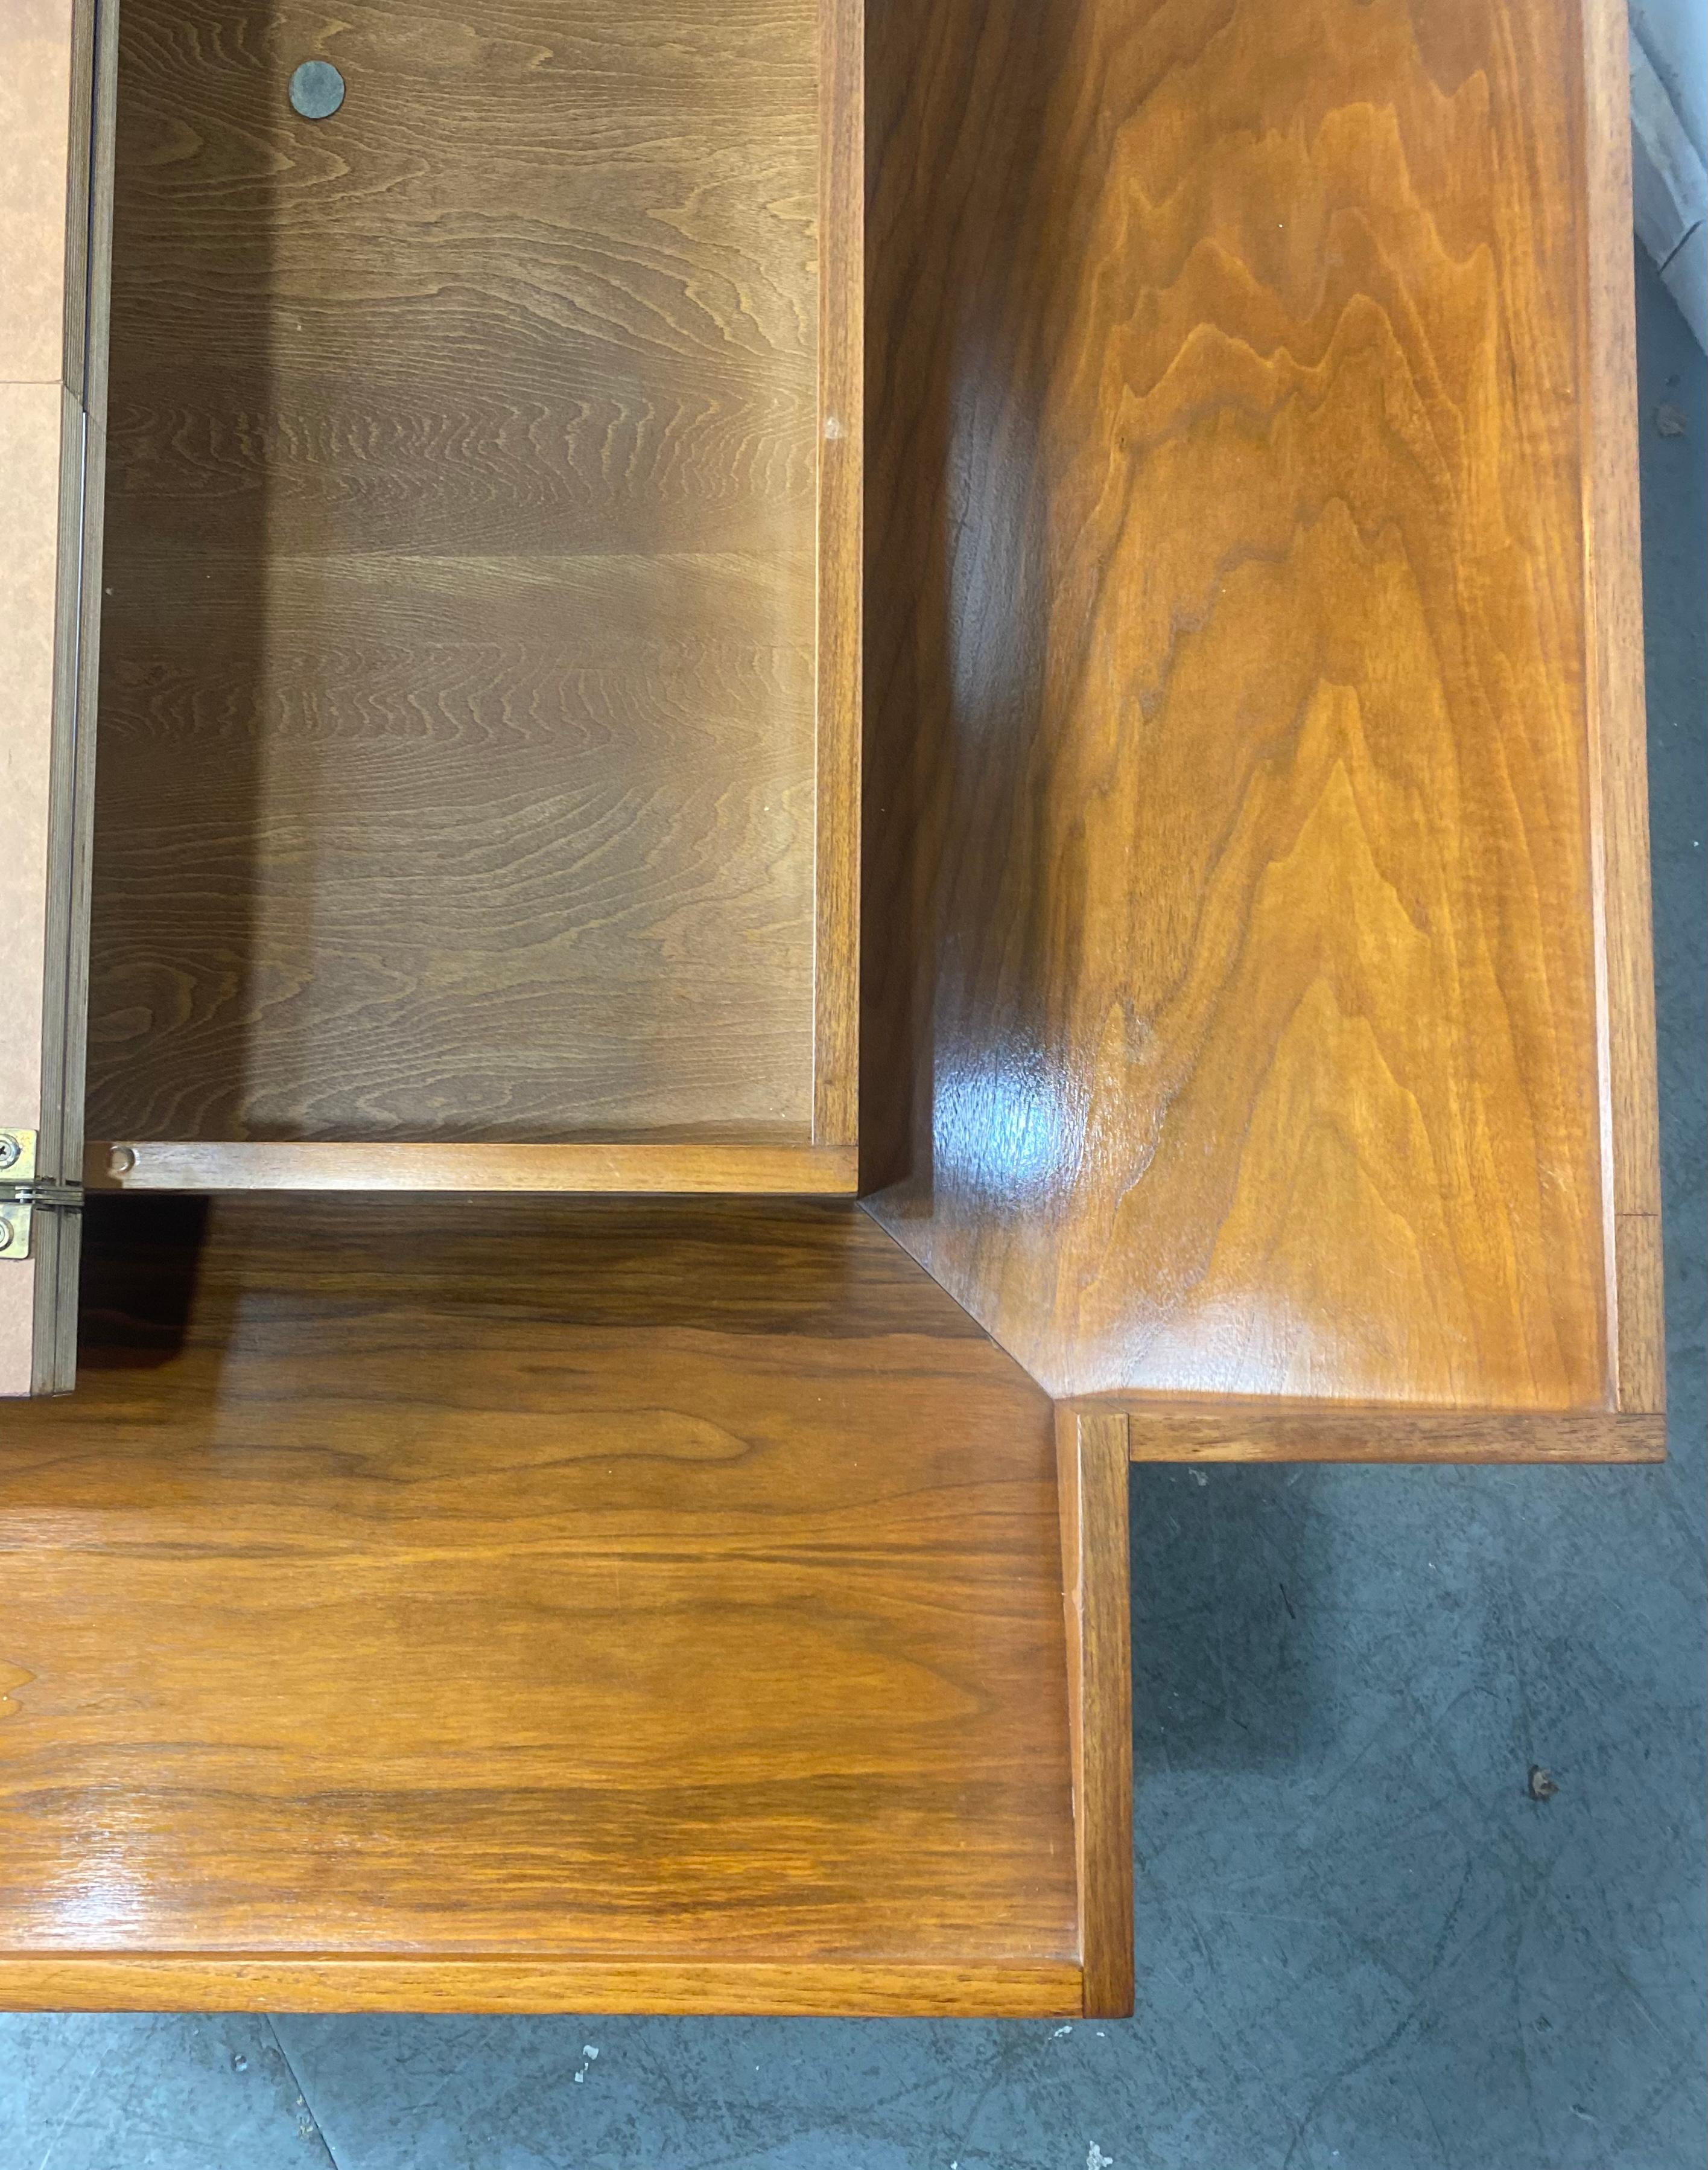 Von John Keal für Brown Saltman entworfener Couchtisch mit Stauraum im Inneren
Tisch aus Nussbaumholz mit schwarz-weiß karierter Formica-Oberfläche lässt sich öffnen, um Stauraum zu bieten
Hergestellt von Brown-Saltman aus Kalifornien in den